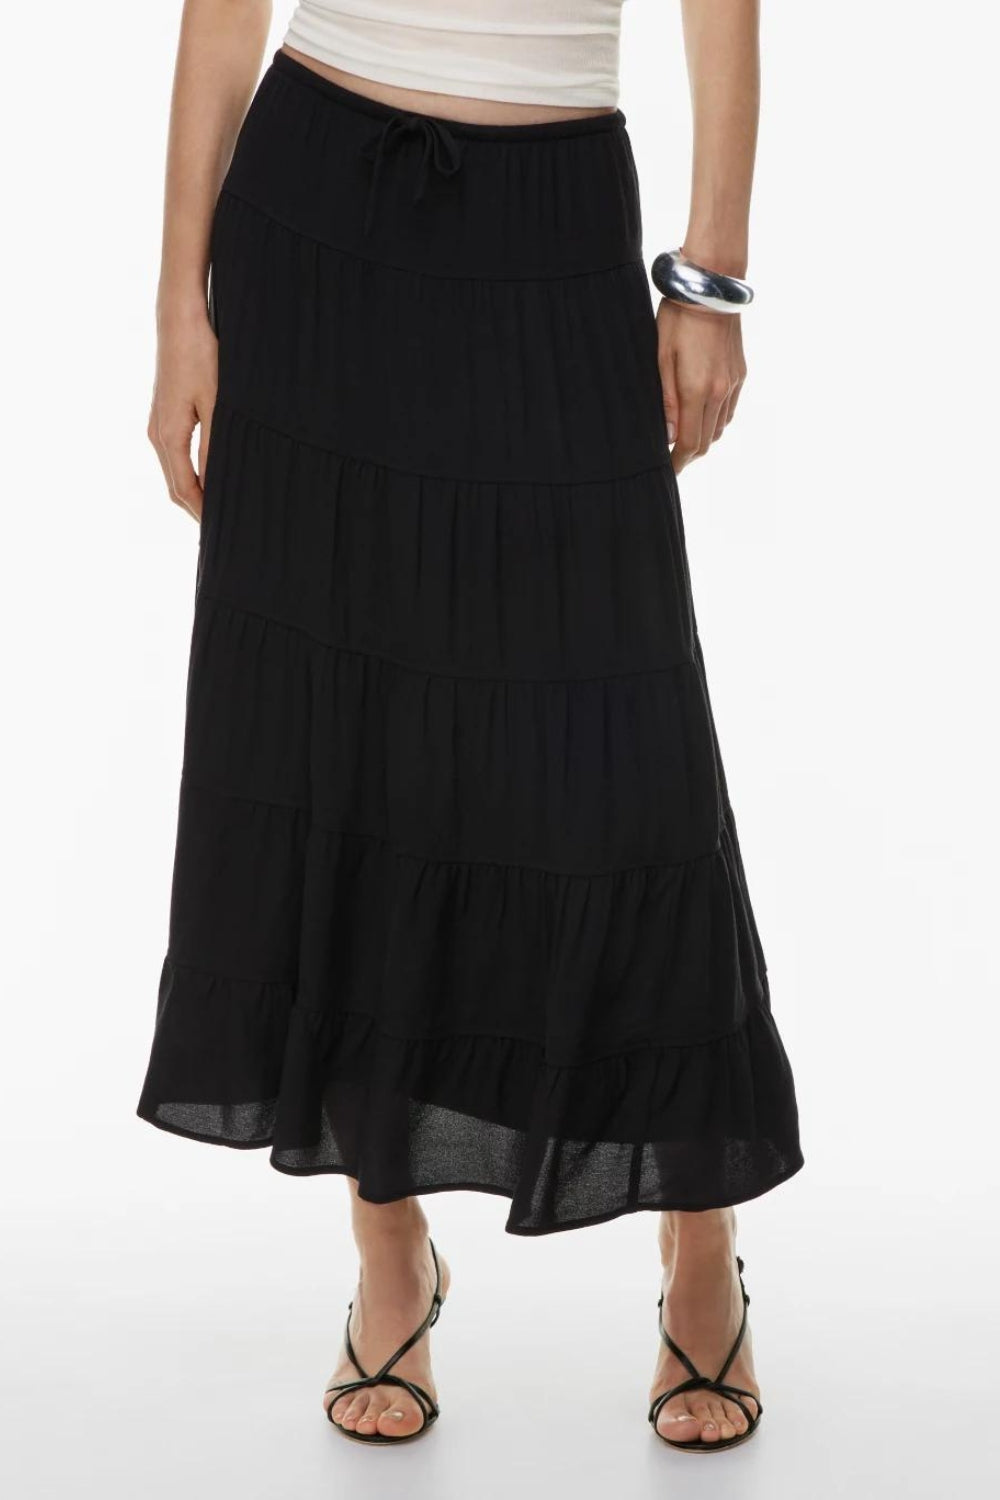 Veranda black skirt